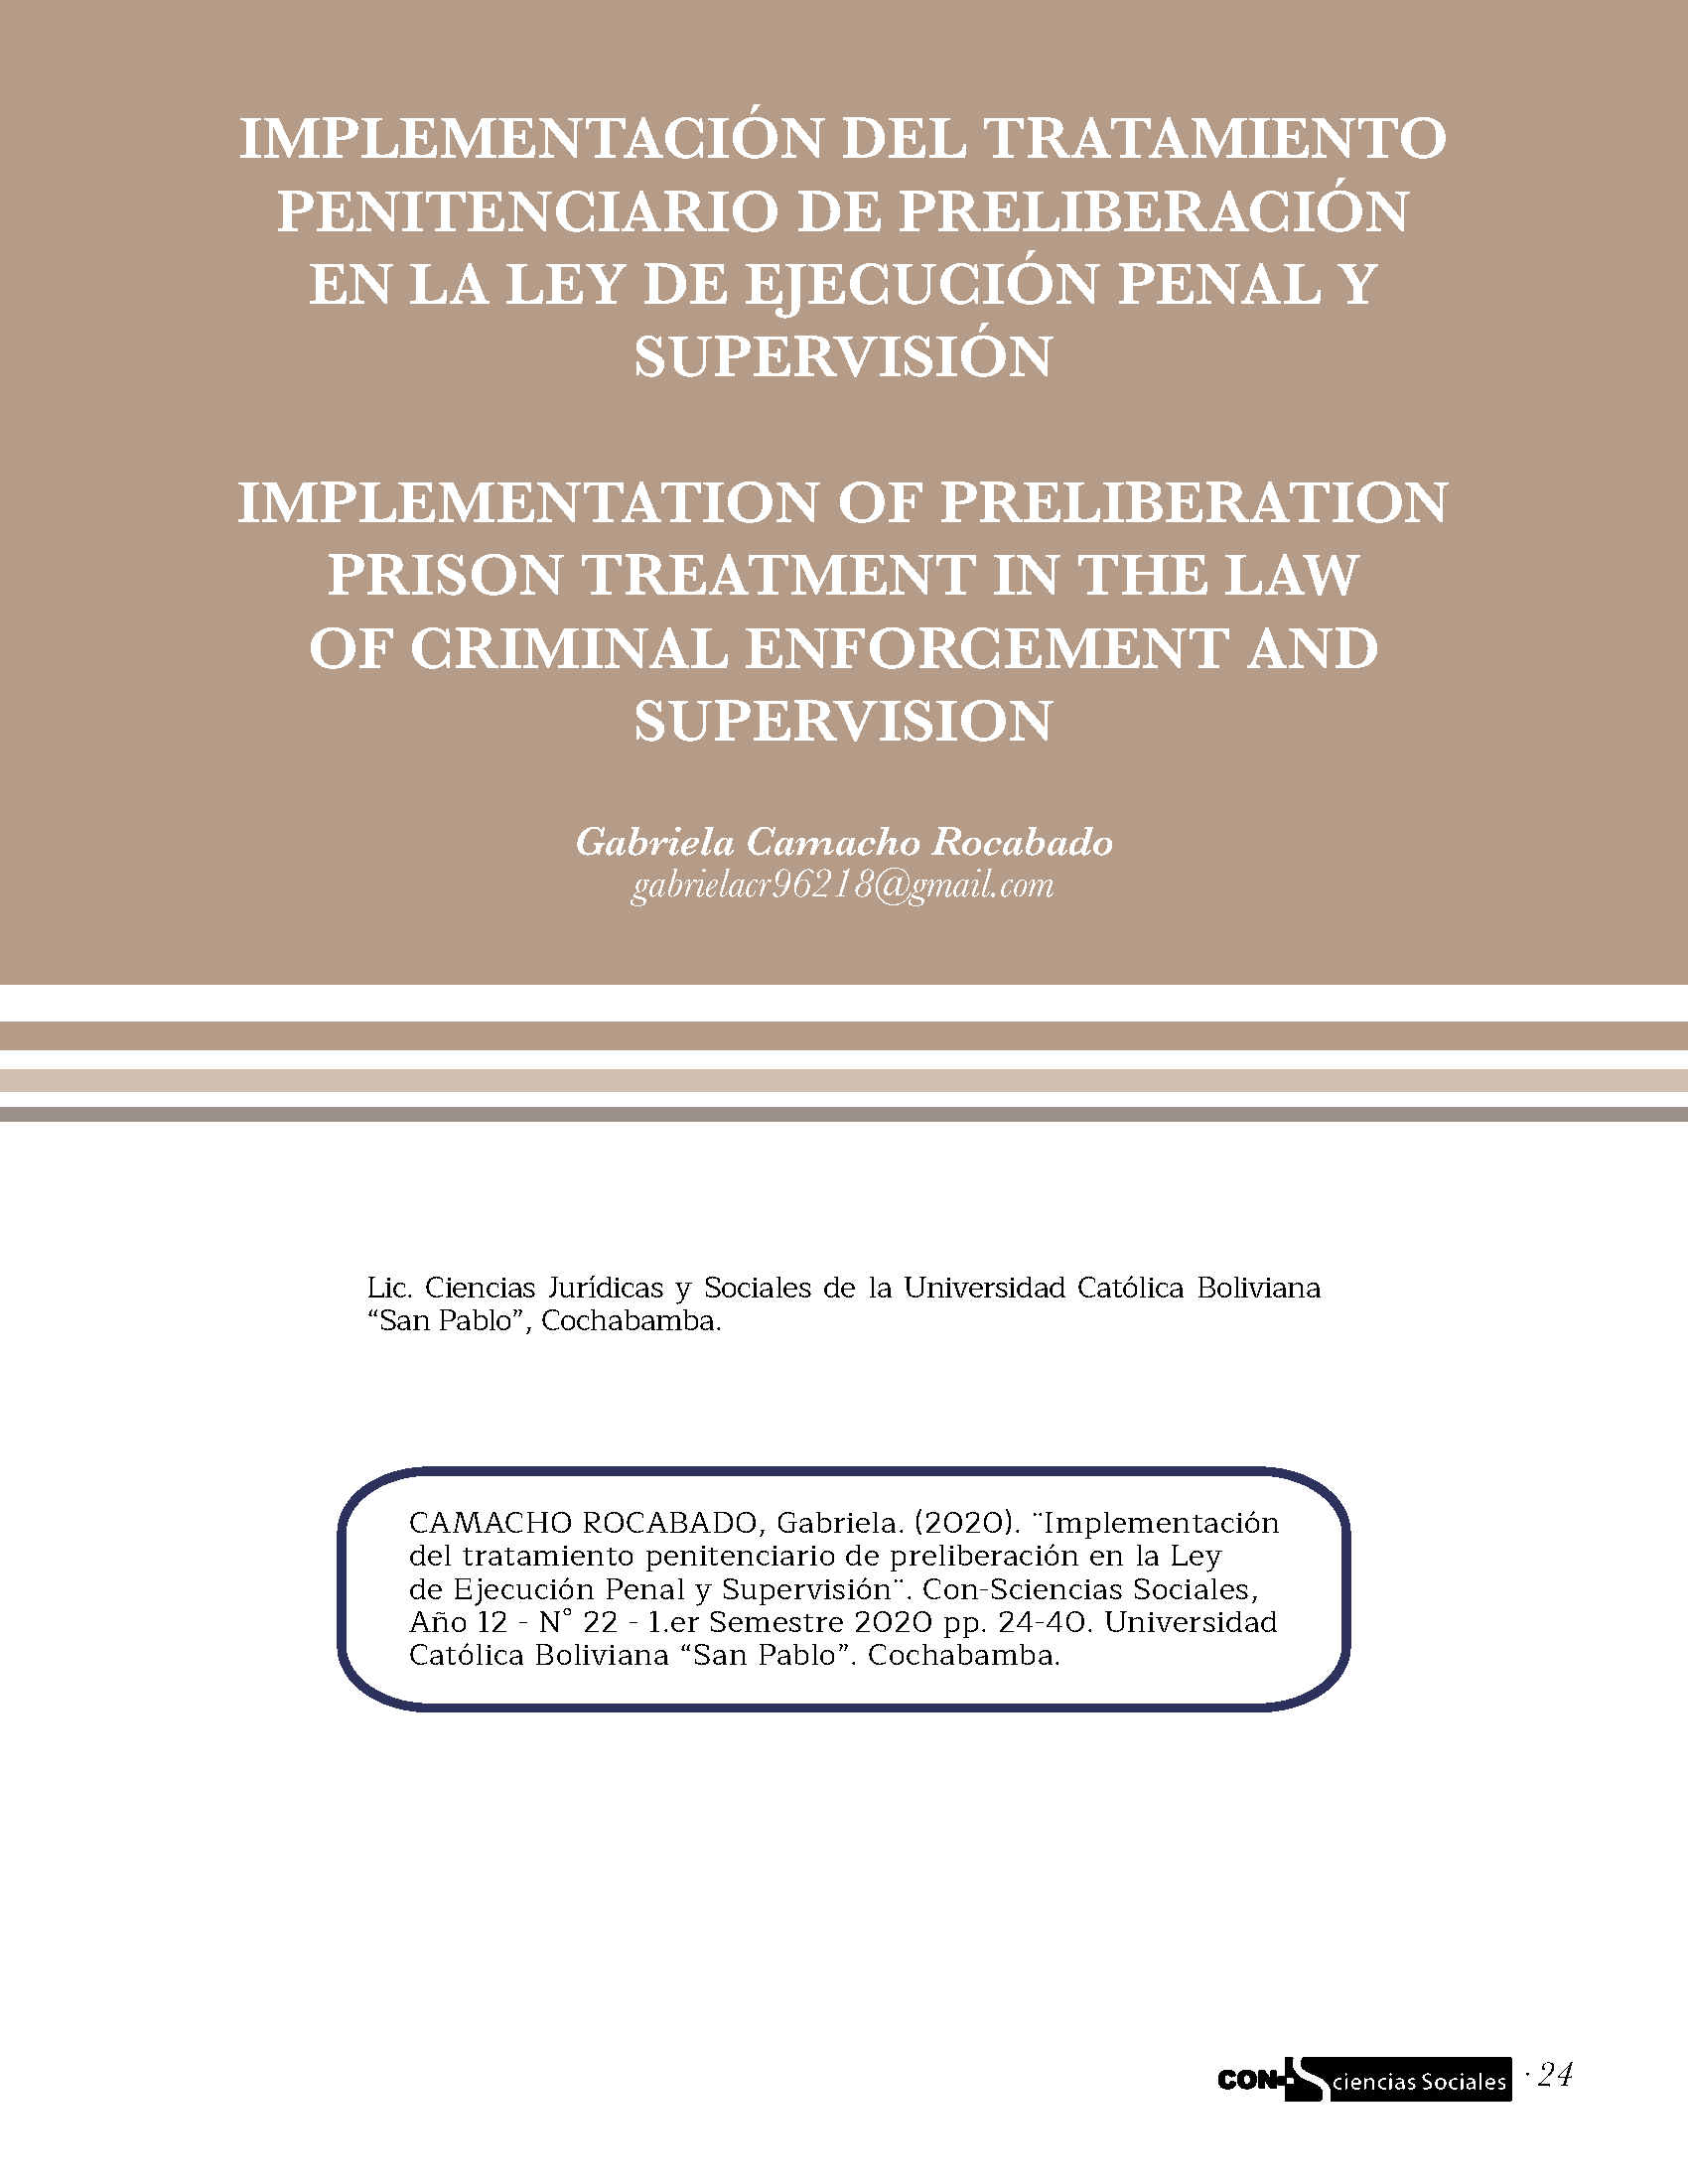 Implementación del tratamiento penitenciario de preliberación en la ley de ejecución penal y supervisión